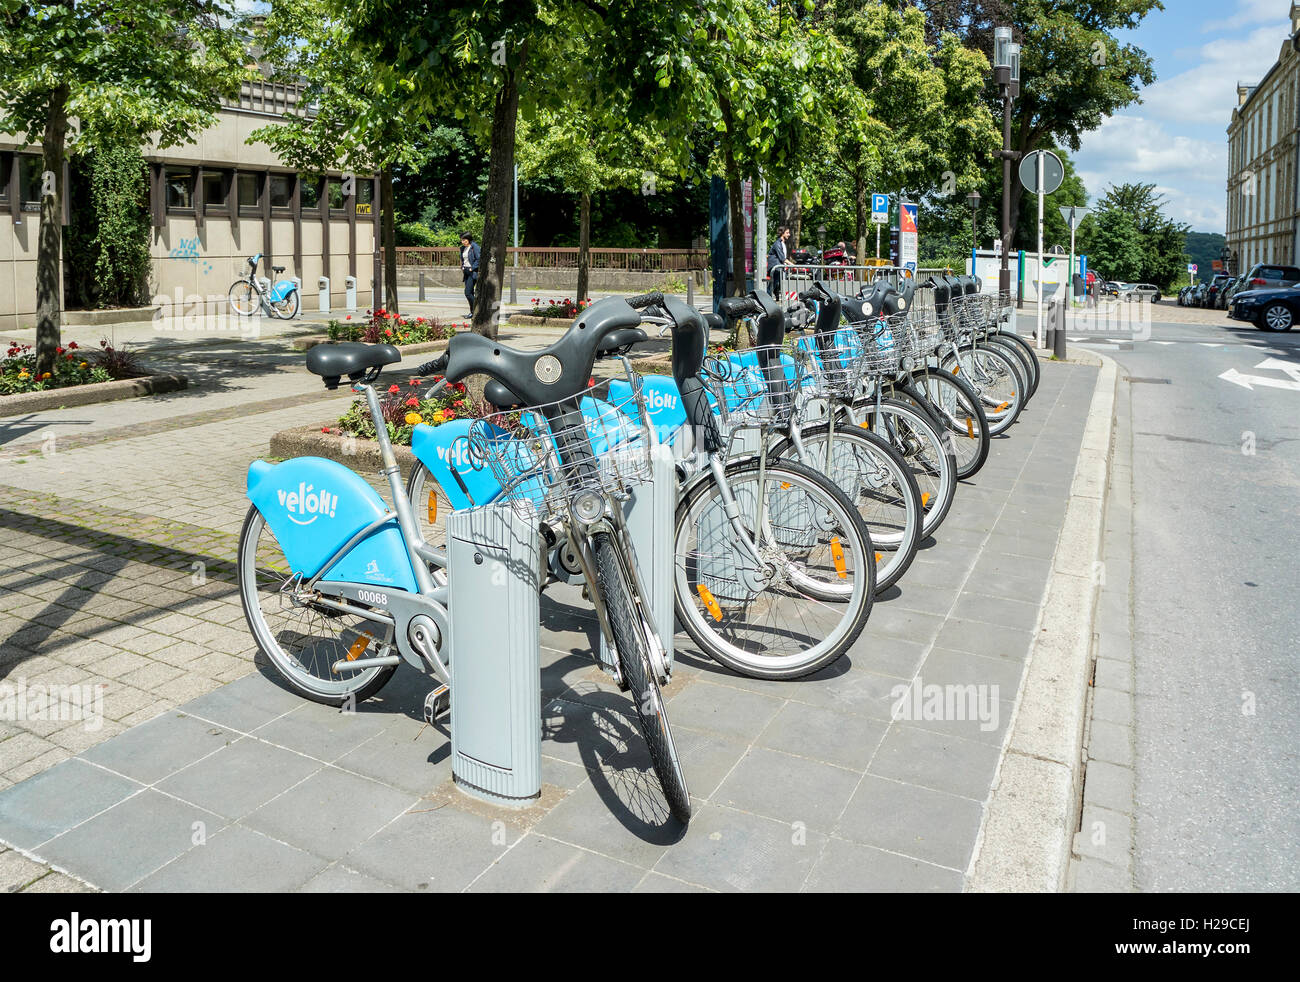 Luxemburg, Luxemburg – JUNE19, 2016: Öffentliche Fahrrad Verleih Terminal laufen durch die Bike-sharing-Unternehmen Veloh in Luxemburg Stockfoto